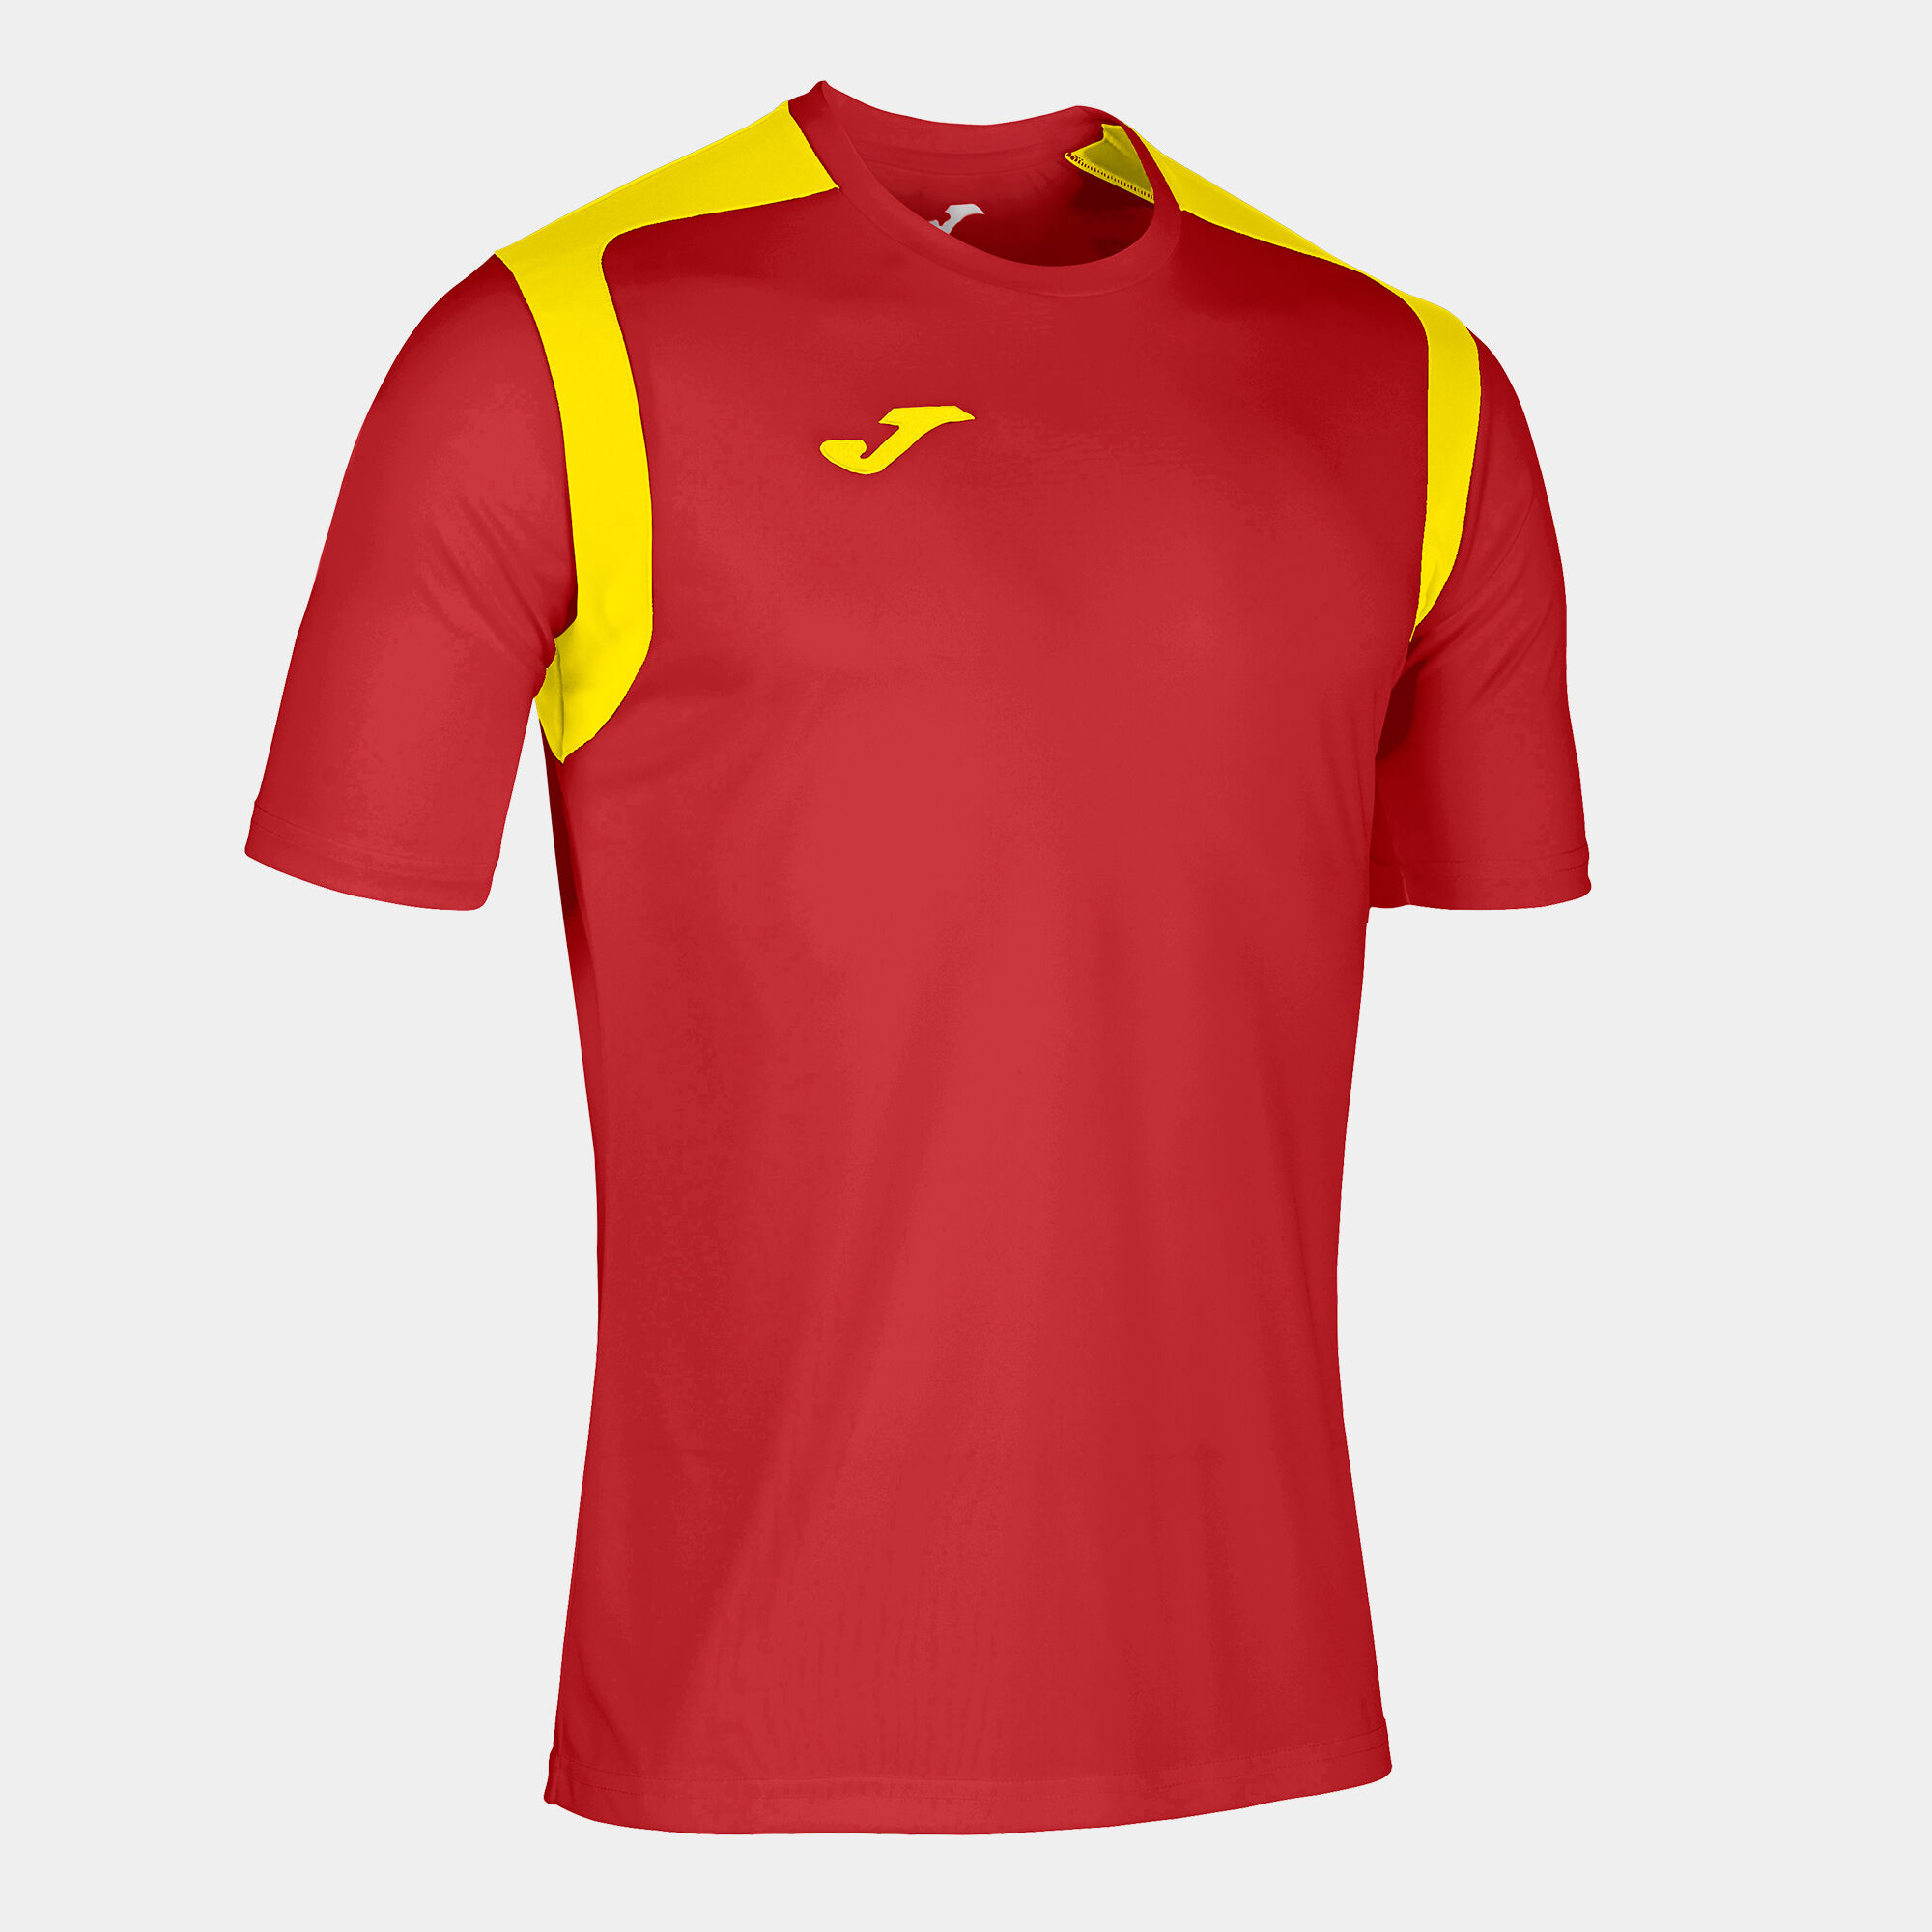 Tricou cu mânecă scurtă bărbaȚi Championship V roșu galben